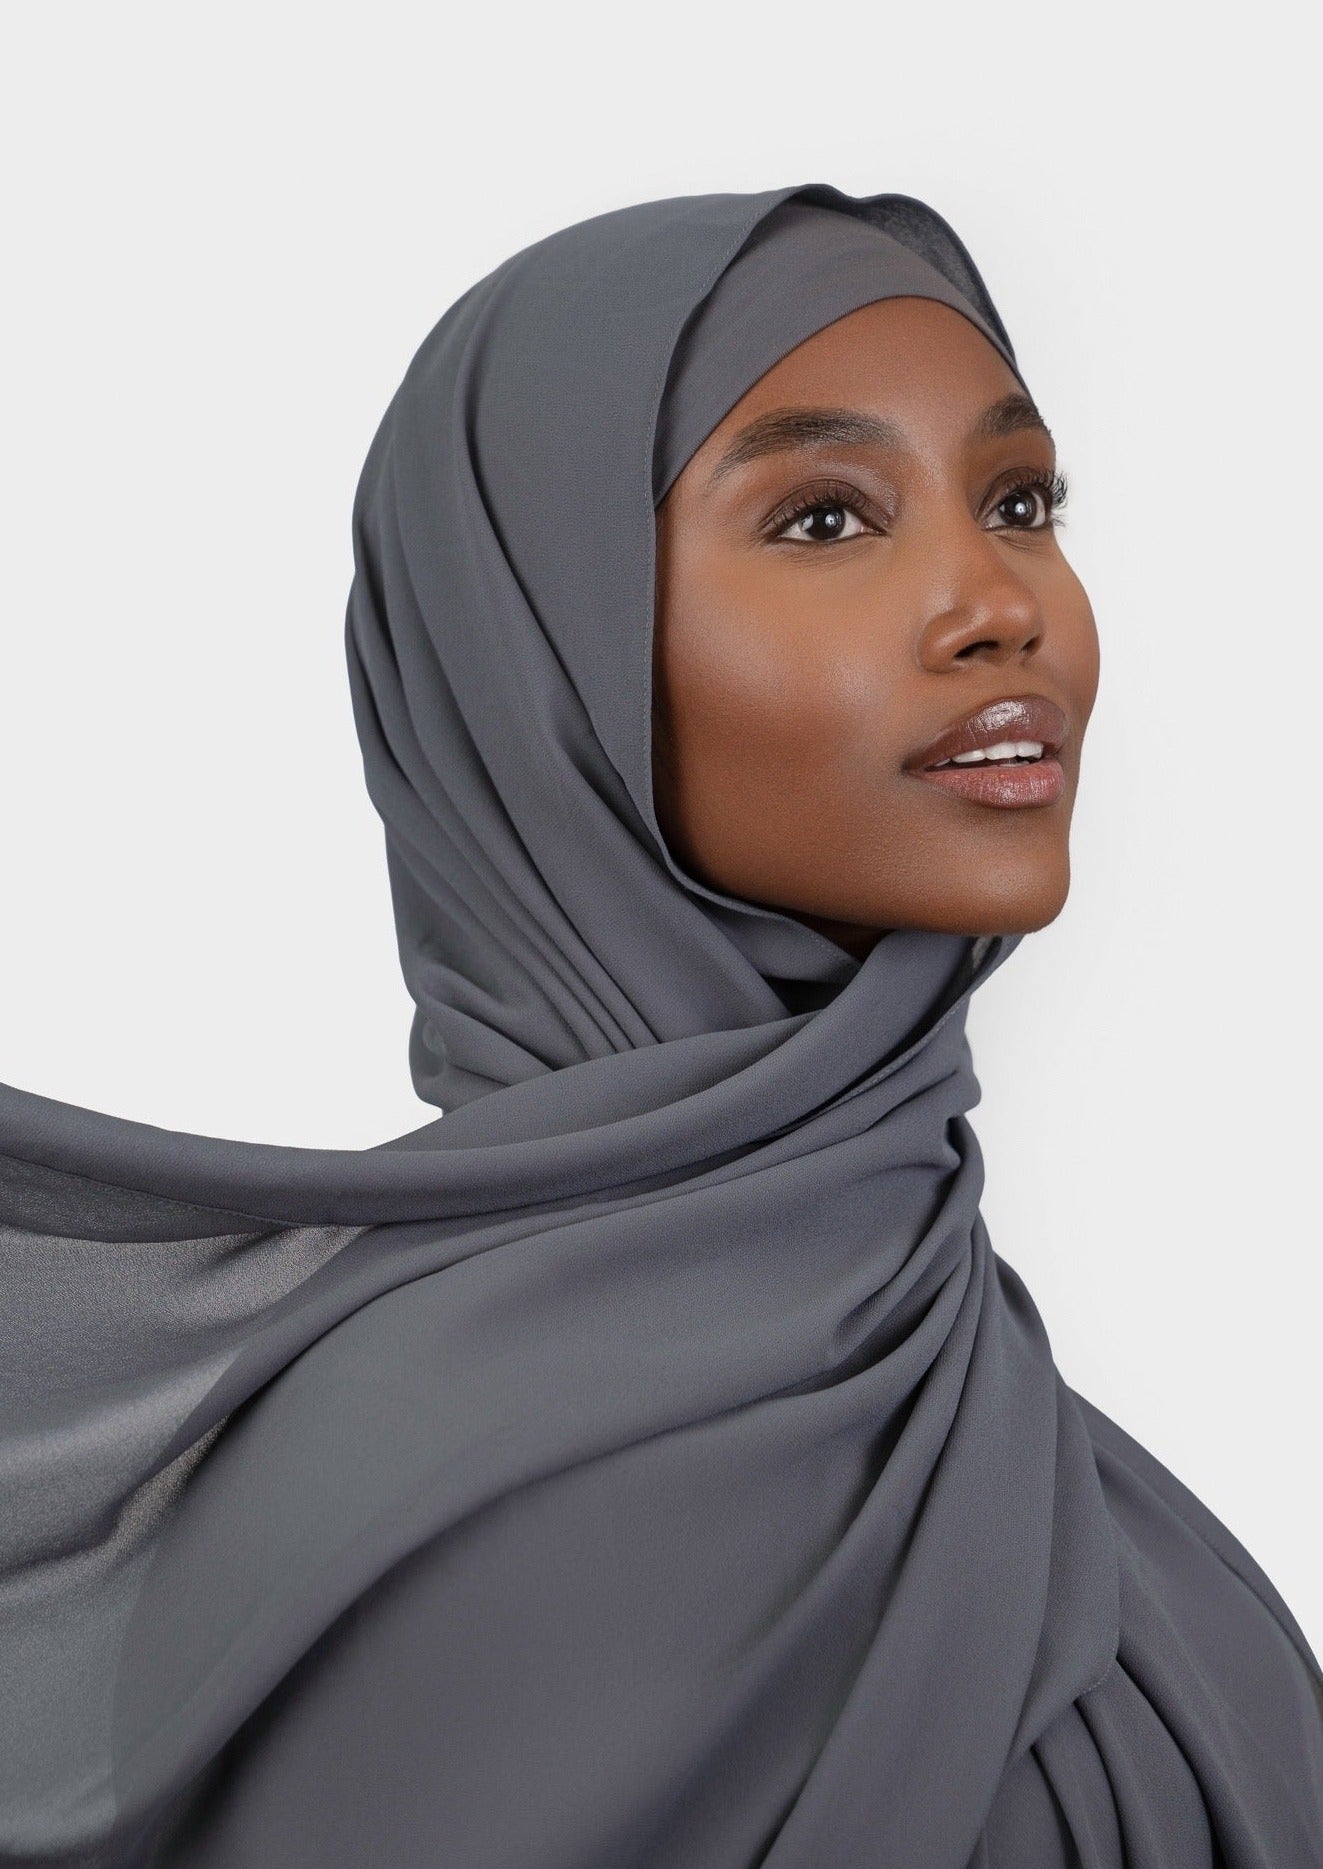 AMARIAH No - Snag Hijab Magnets